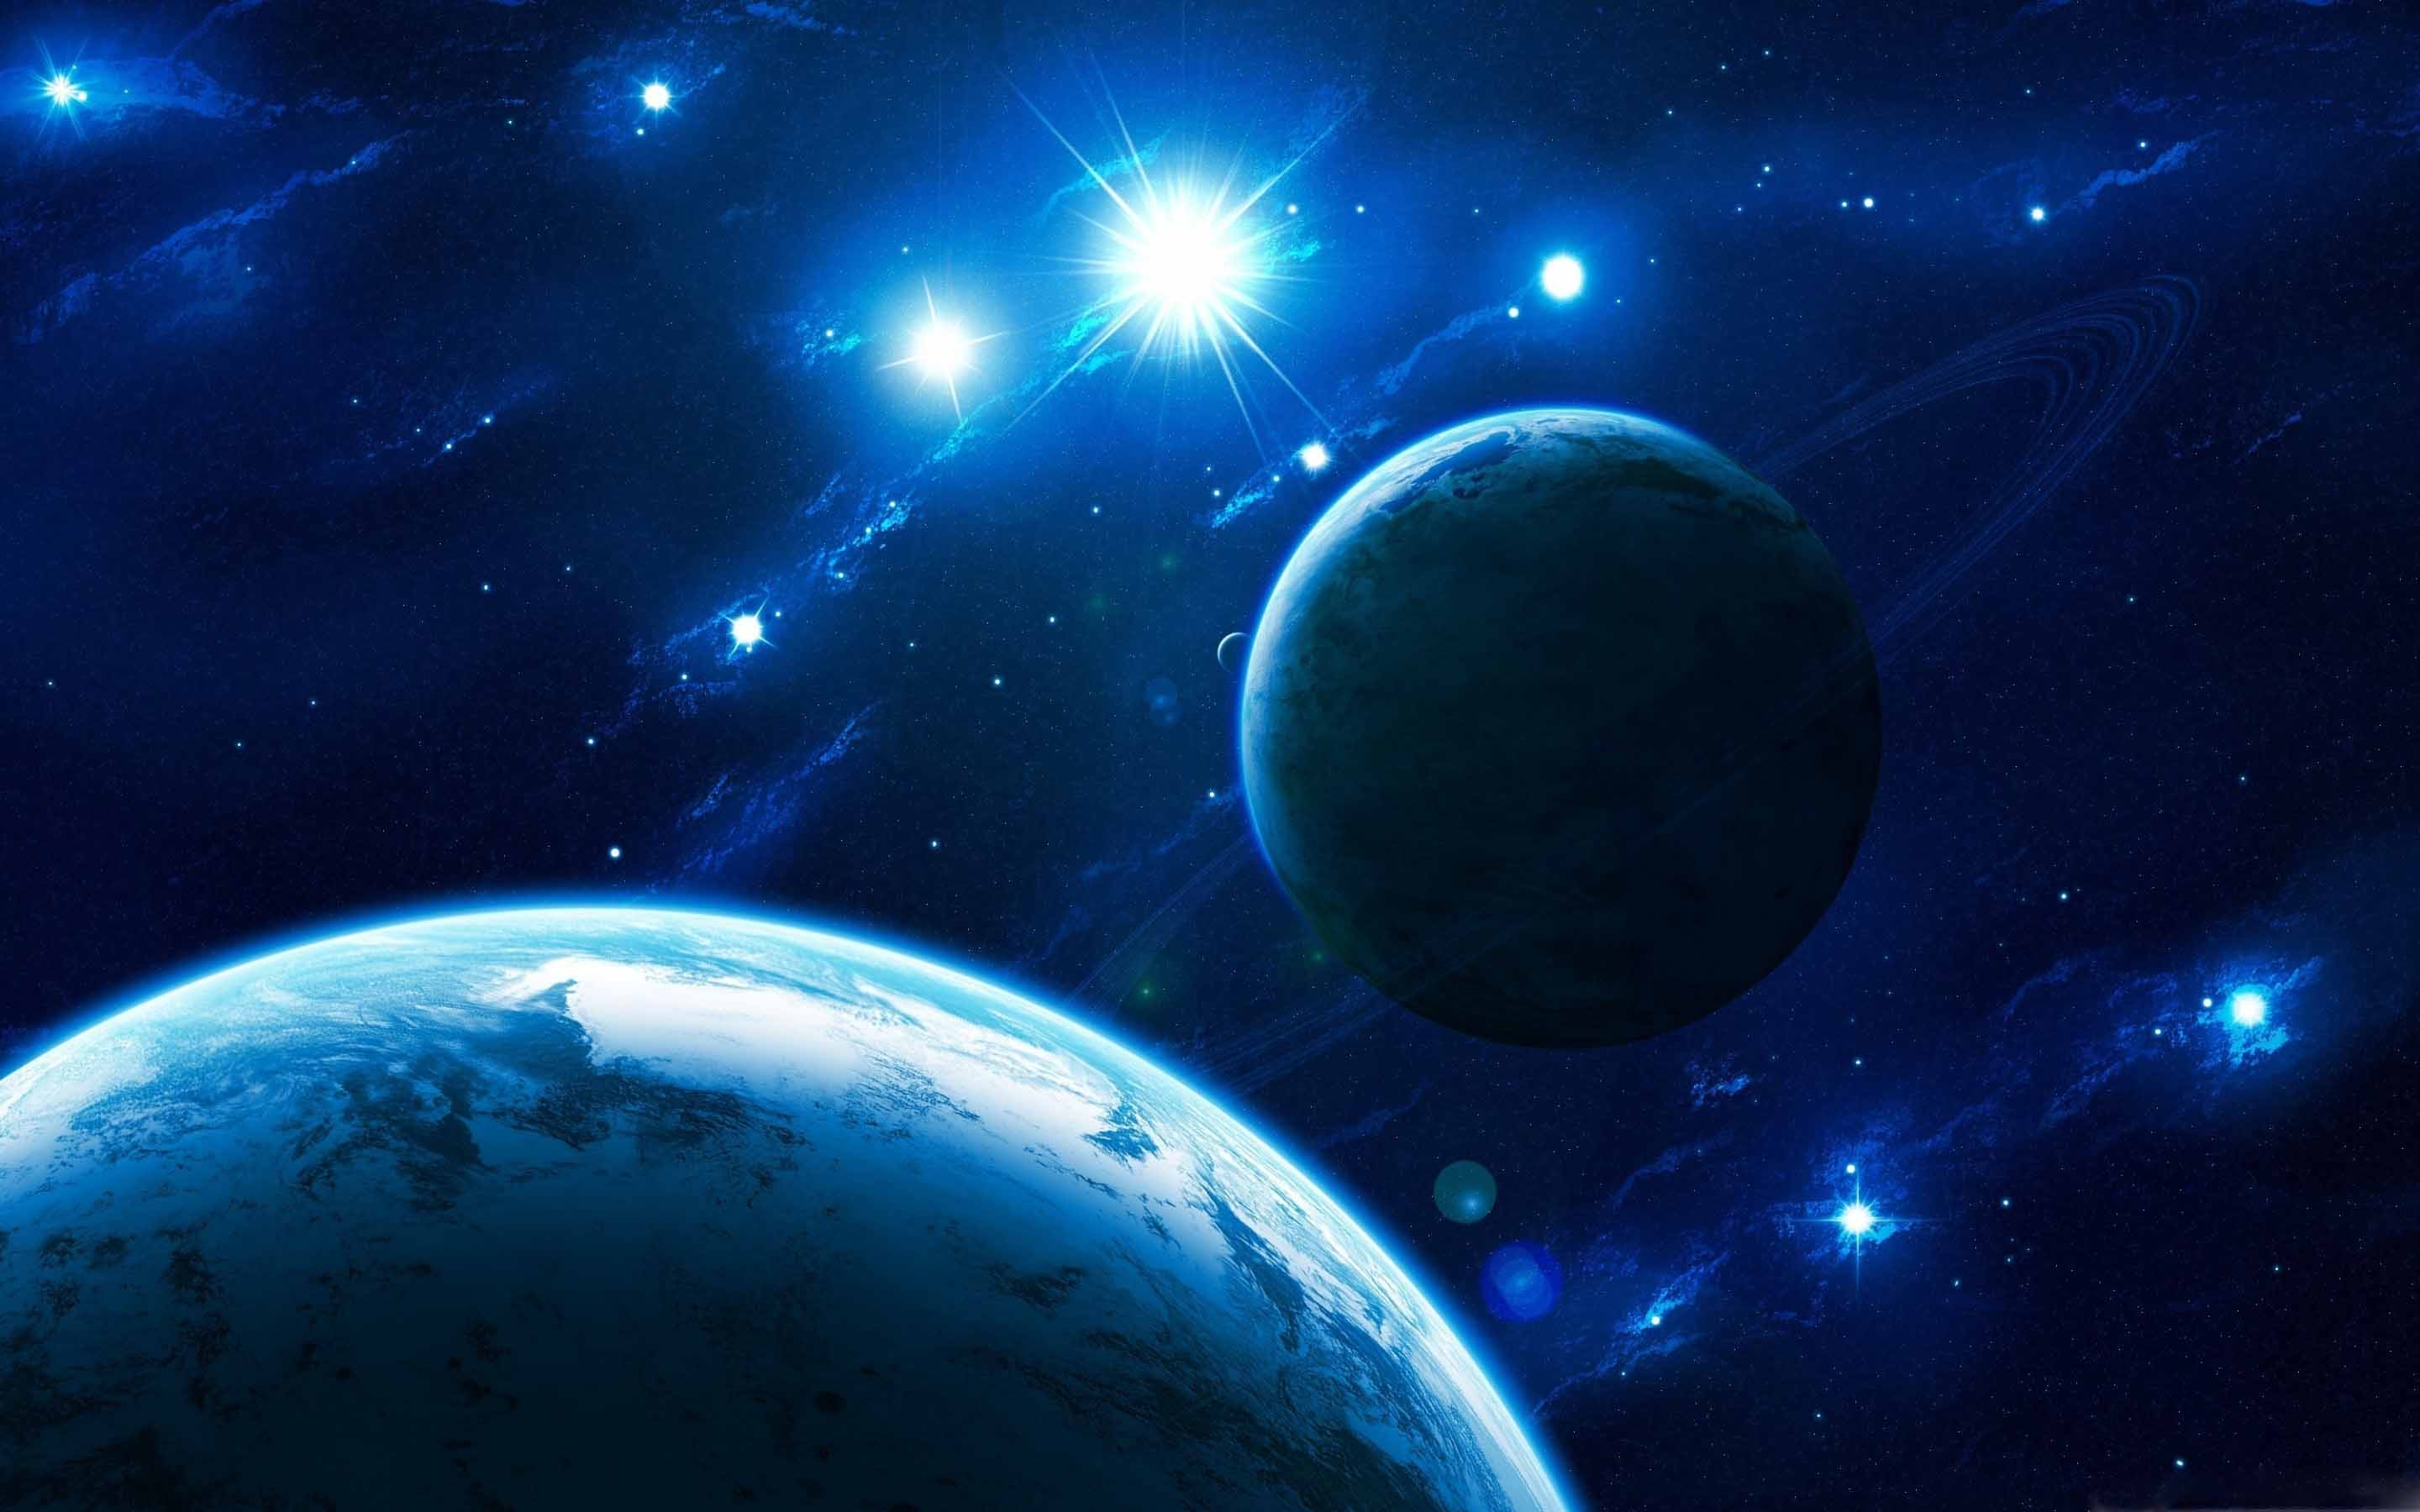 descargar fondos de estrellas,espacio exterior,objeto astronómico,universo,planeta,atmósfera